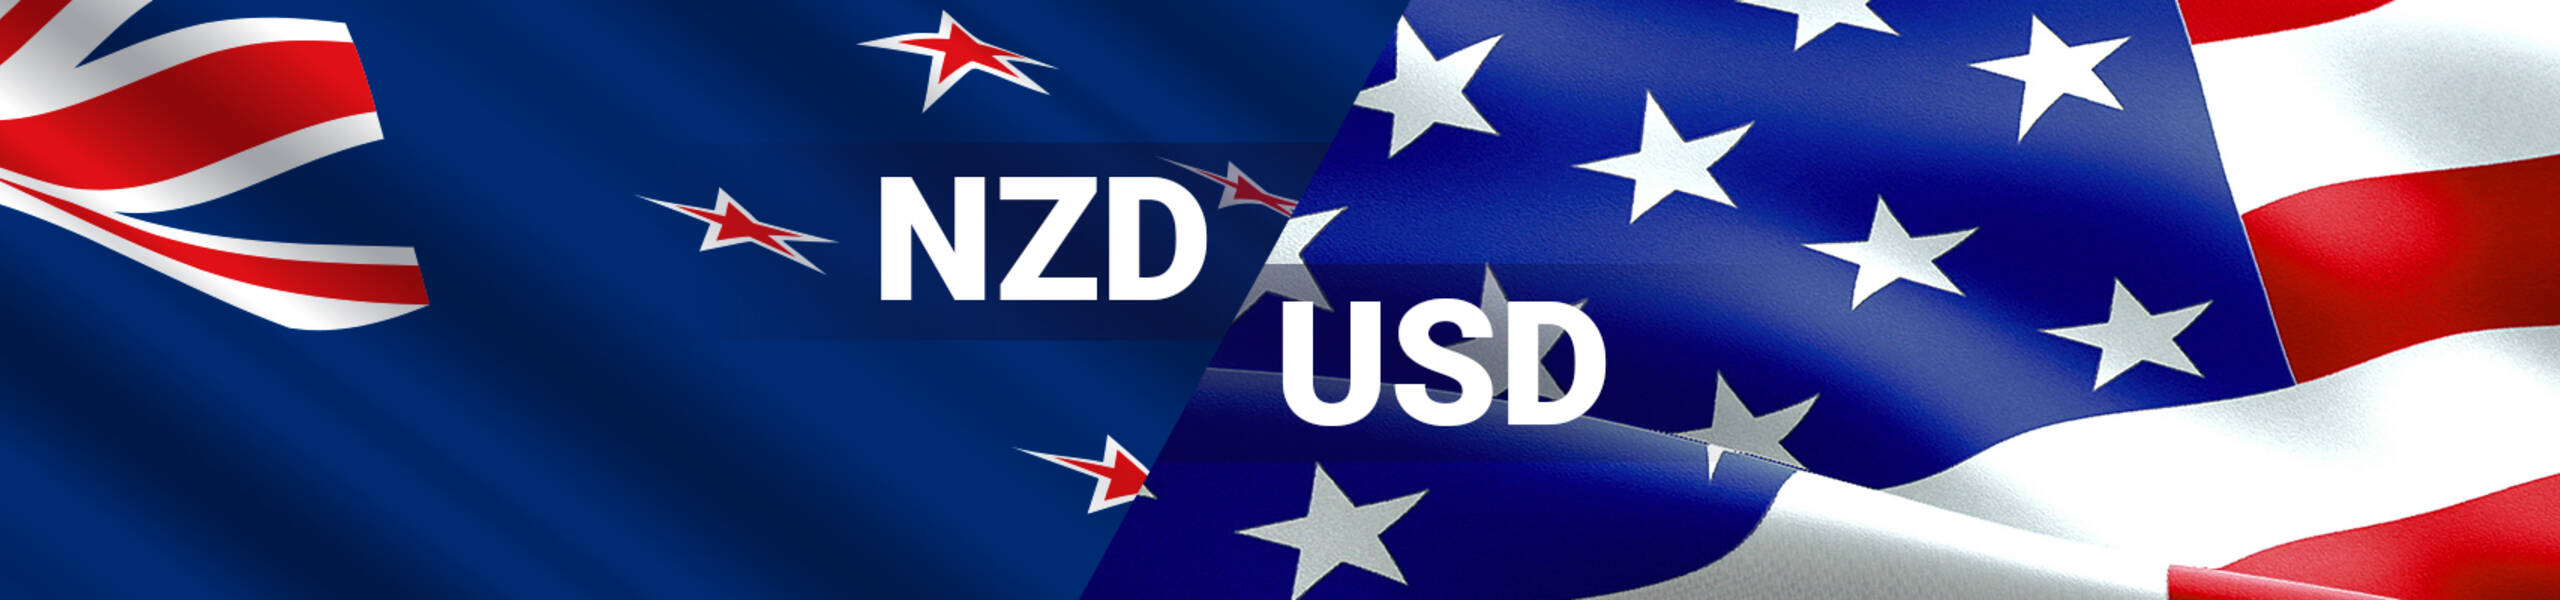 NZD/USD buscando el 100% del ciclo entre el 11 y 18 mayo en 0.7012